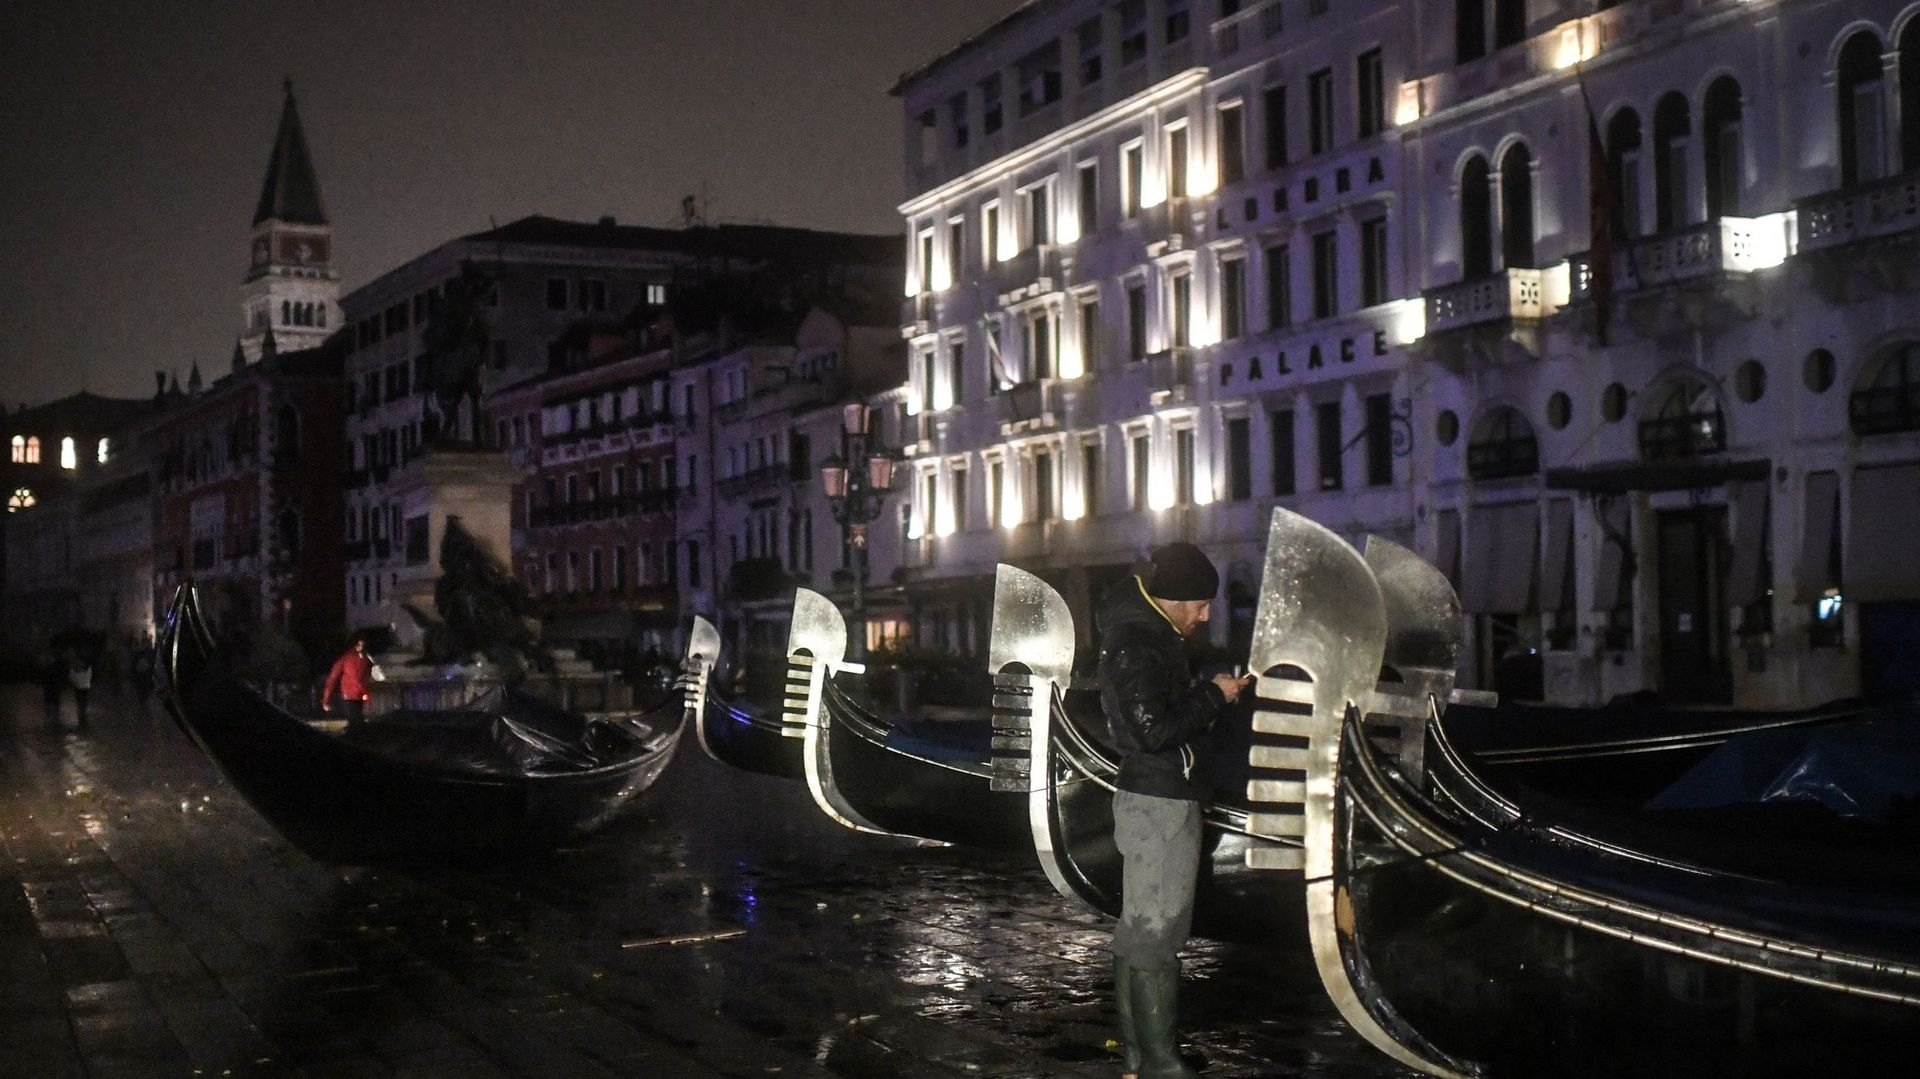 "Situation dramatique": une marée historique inonde Venise, le record de 1966 serait dépassé